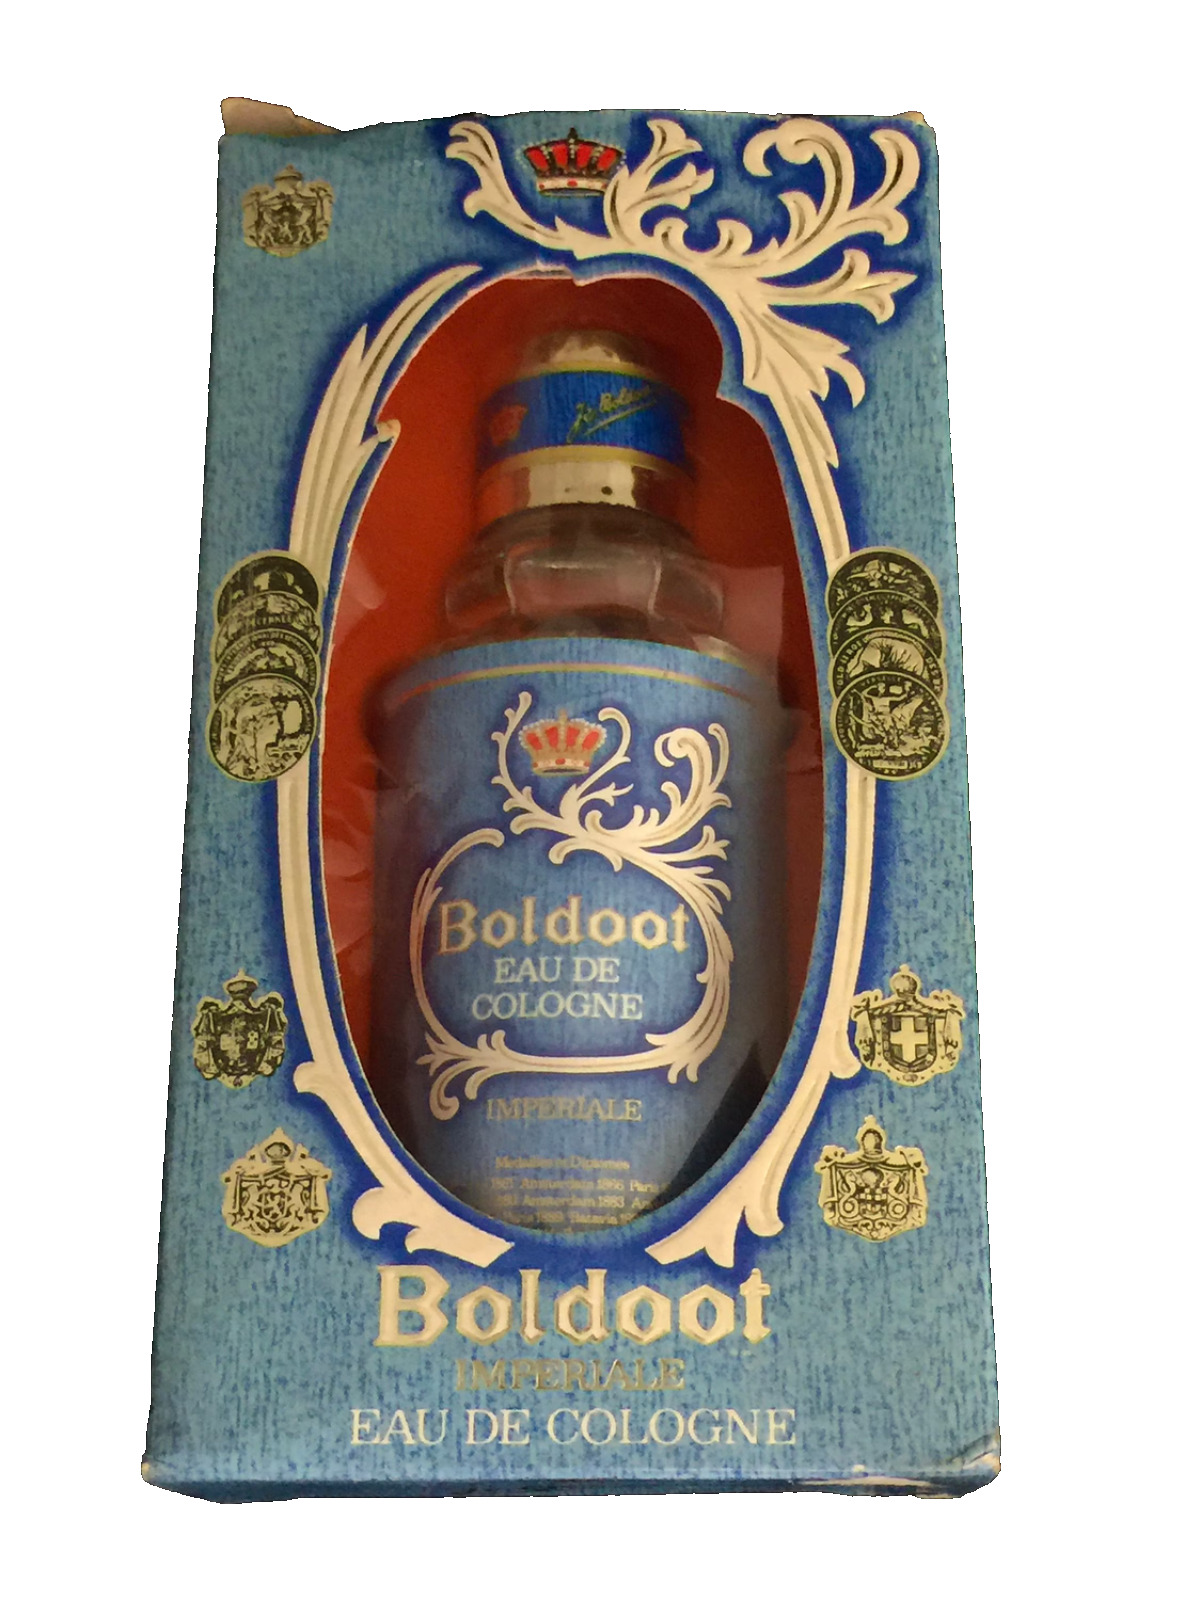 Vintage Original Impériale Eau de Cologne Boldoot Splash 50 ml Bottle Full